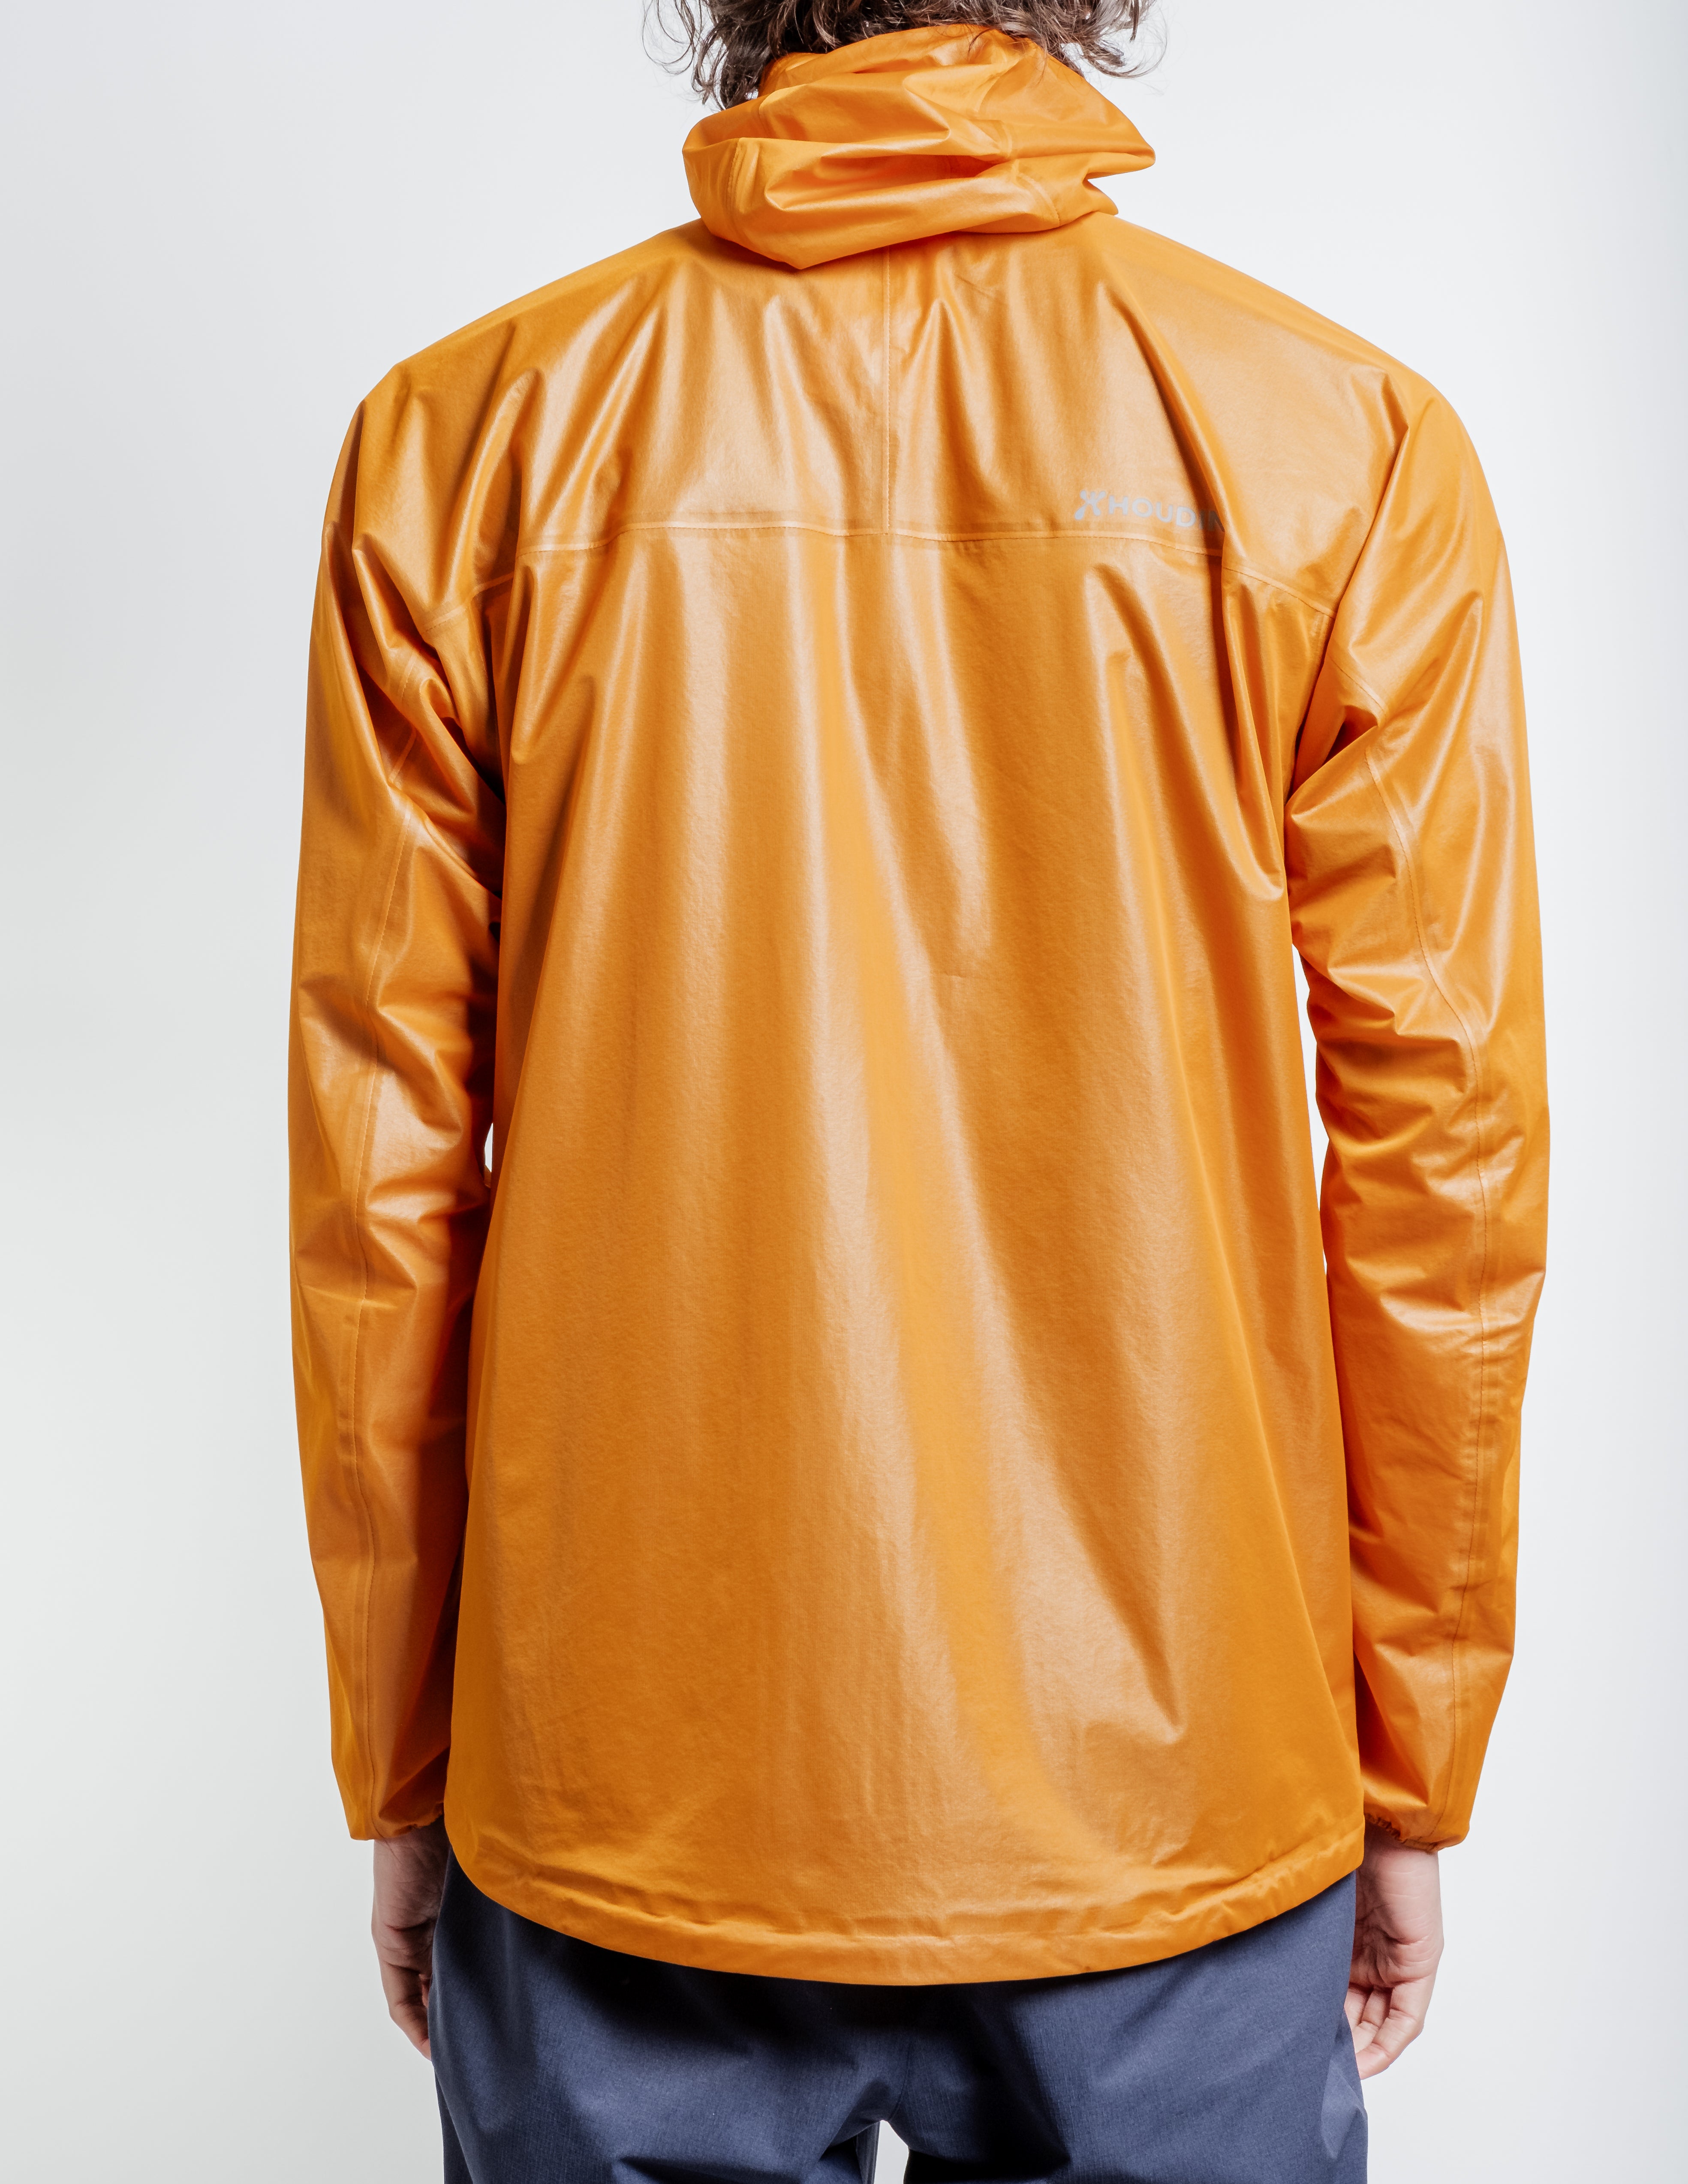 The Orange Jacket in Orange ~ Windthrow